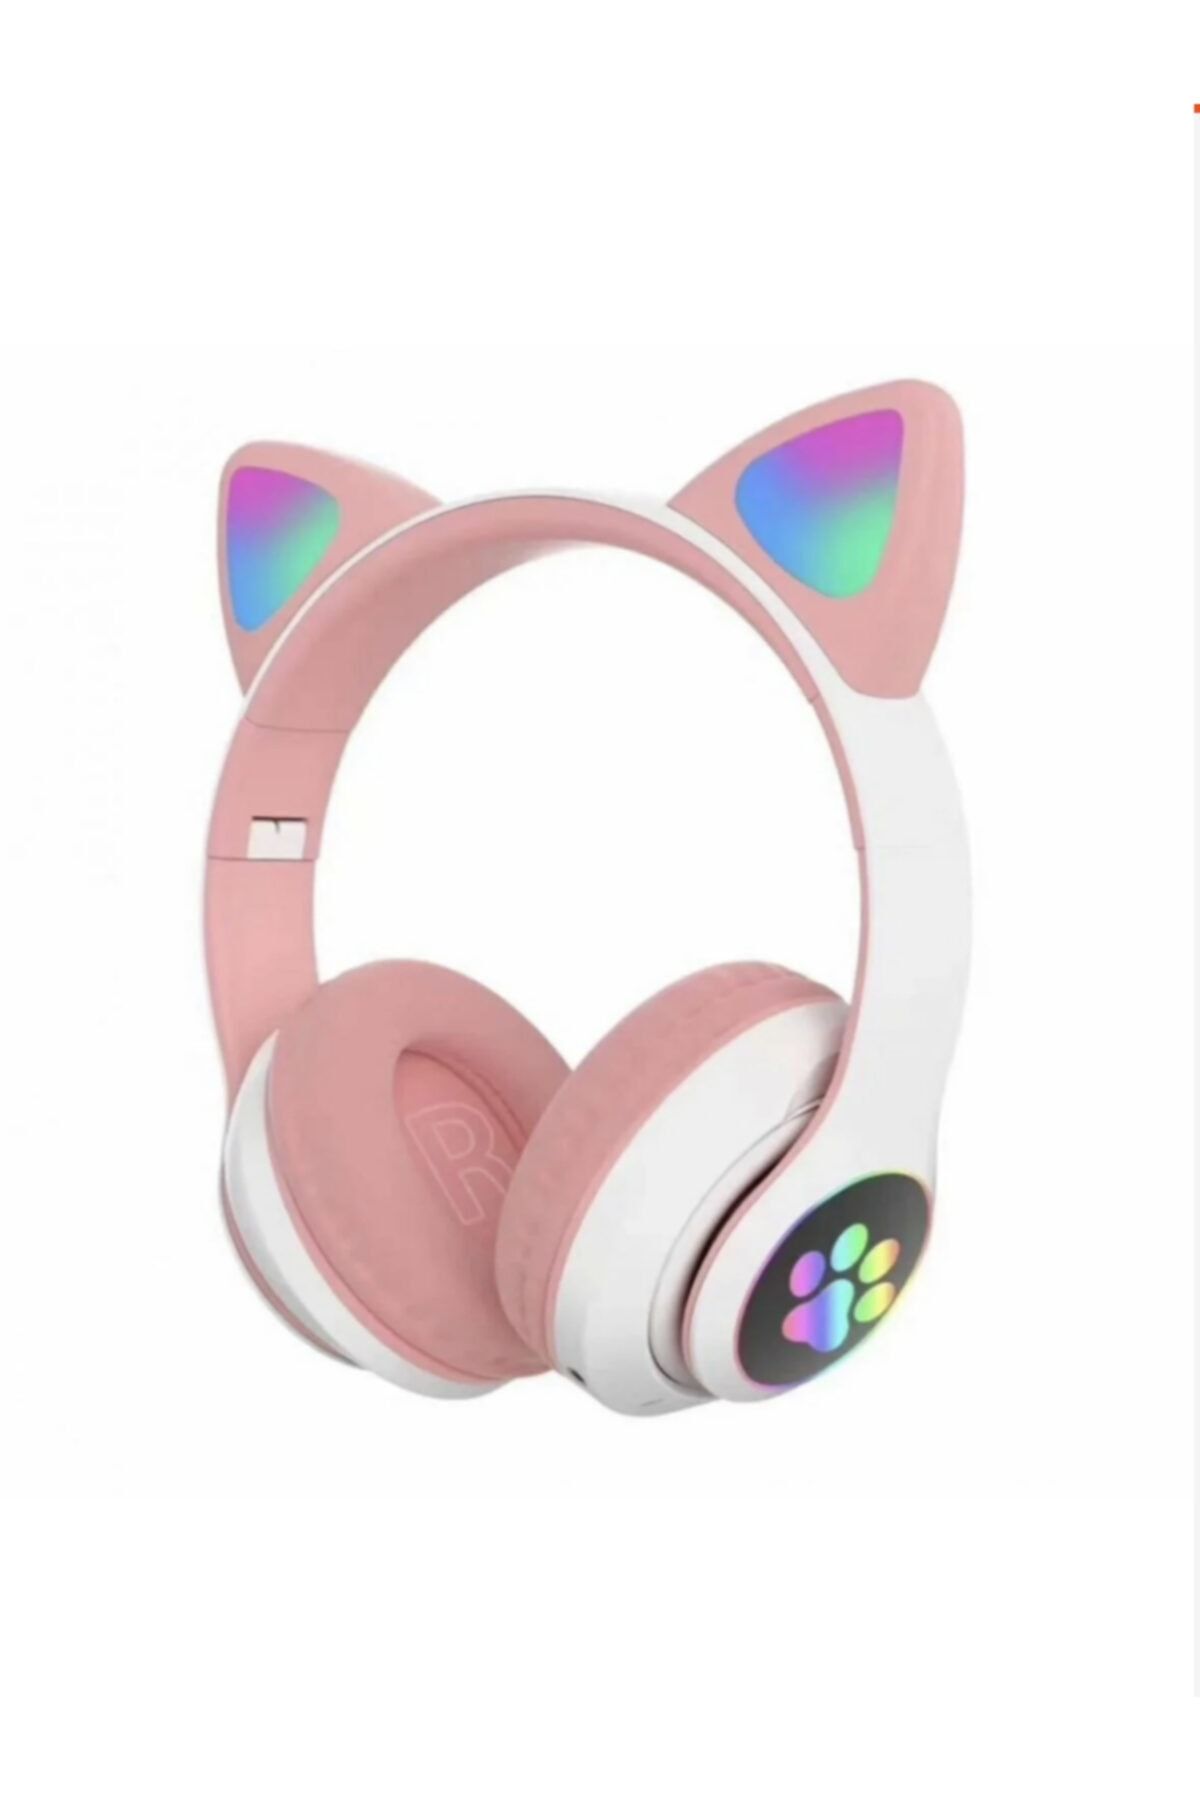 Teknoloji Gelsin Pembe Bluetooth 5.0 Mikrofonlu Kablosuz Kulaklık Yüksek Ses Akıllı Led Işıklı Kedi Patili Rgb